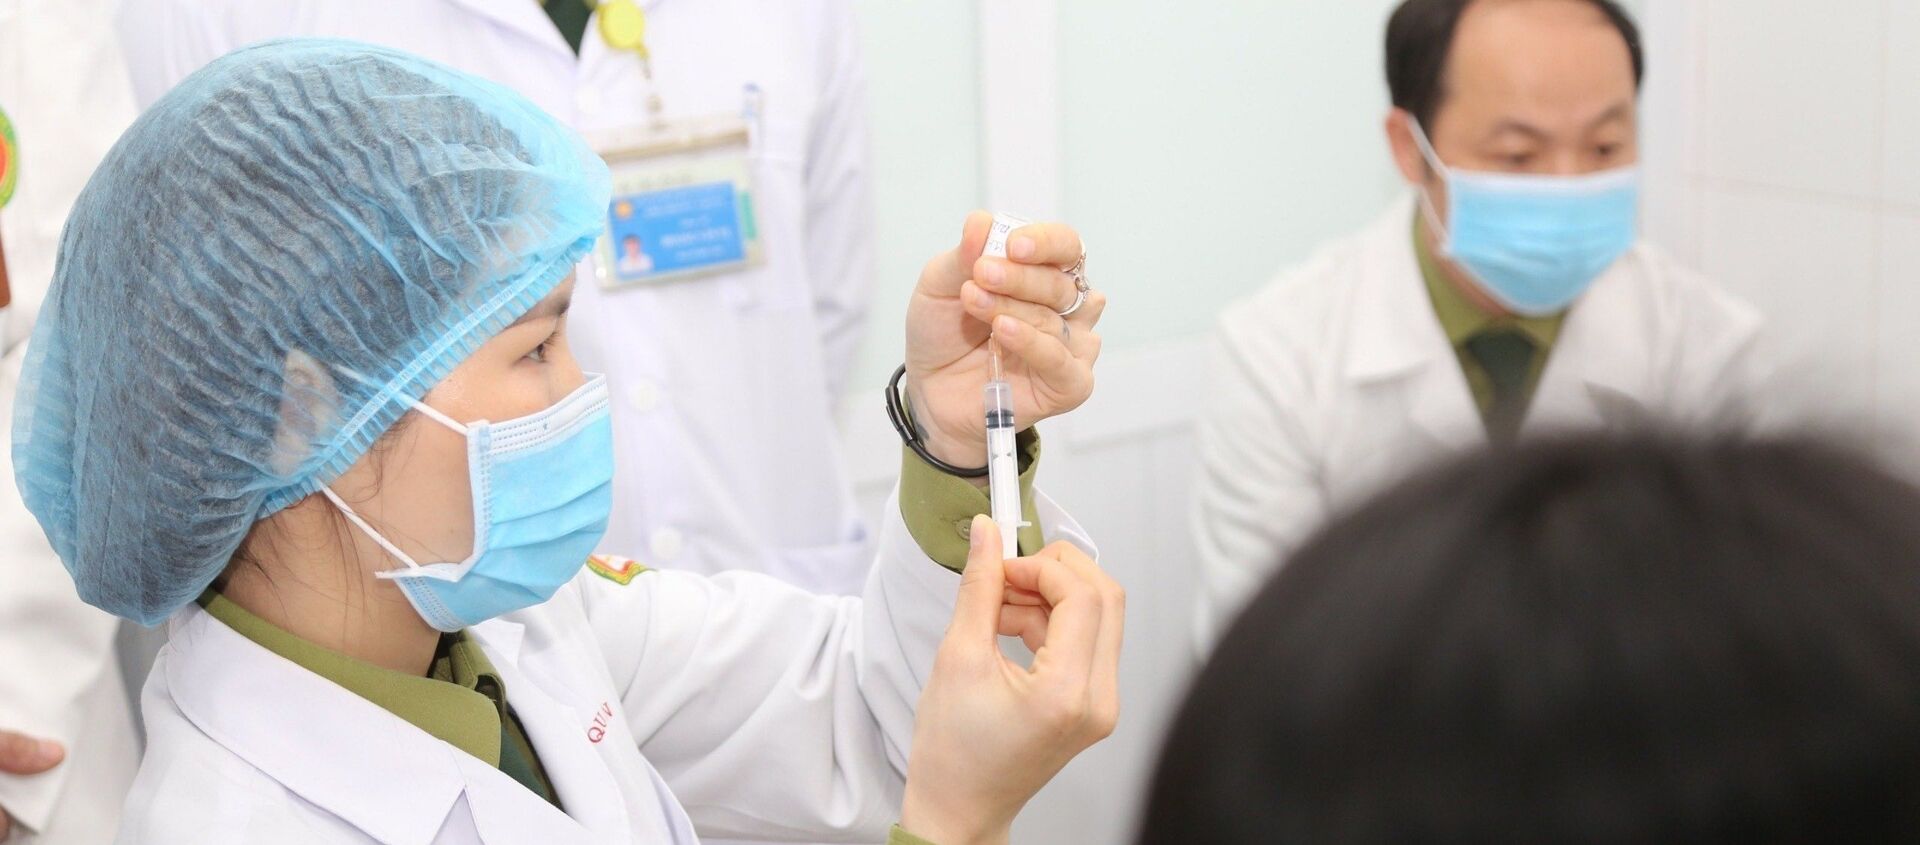 Bác sĩ chuẩn bị tiêm mũi vaccine ngừa COVID-19 Nano Covax nhóm liều 50mcg cho tình nguyện viên. - Sputnik Việt Nam, 1920, 25.02.2021